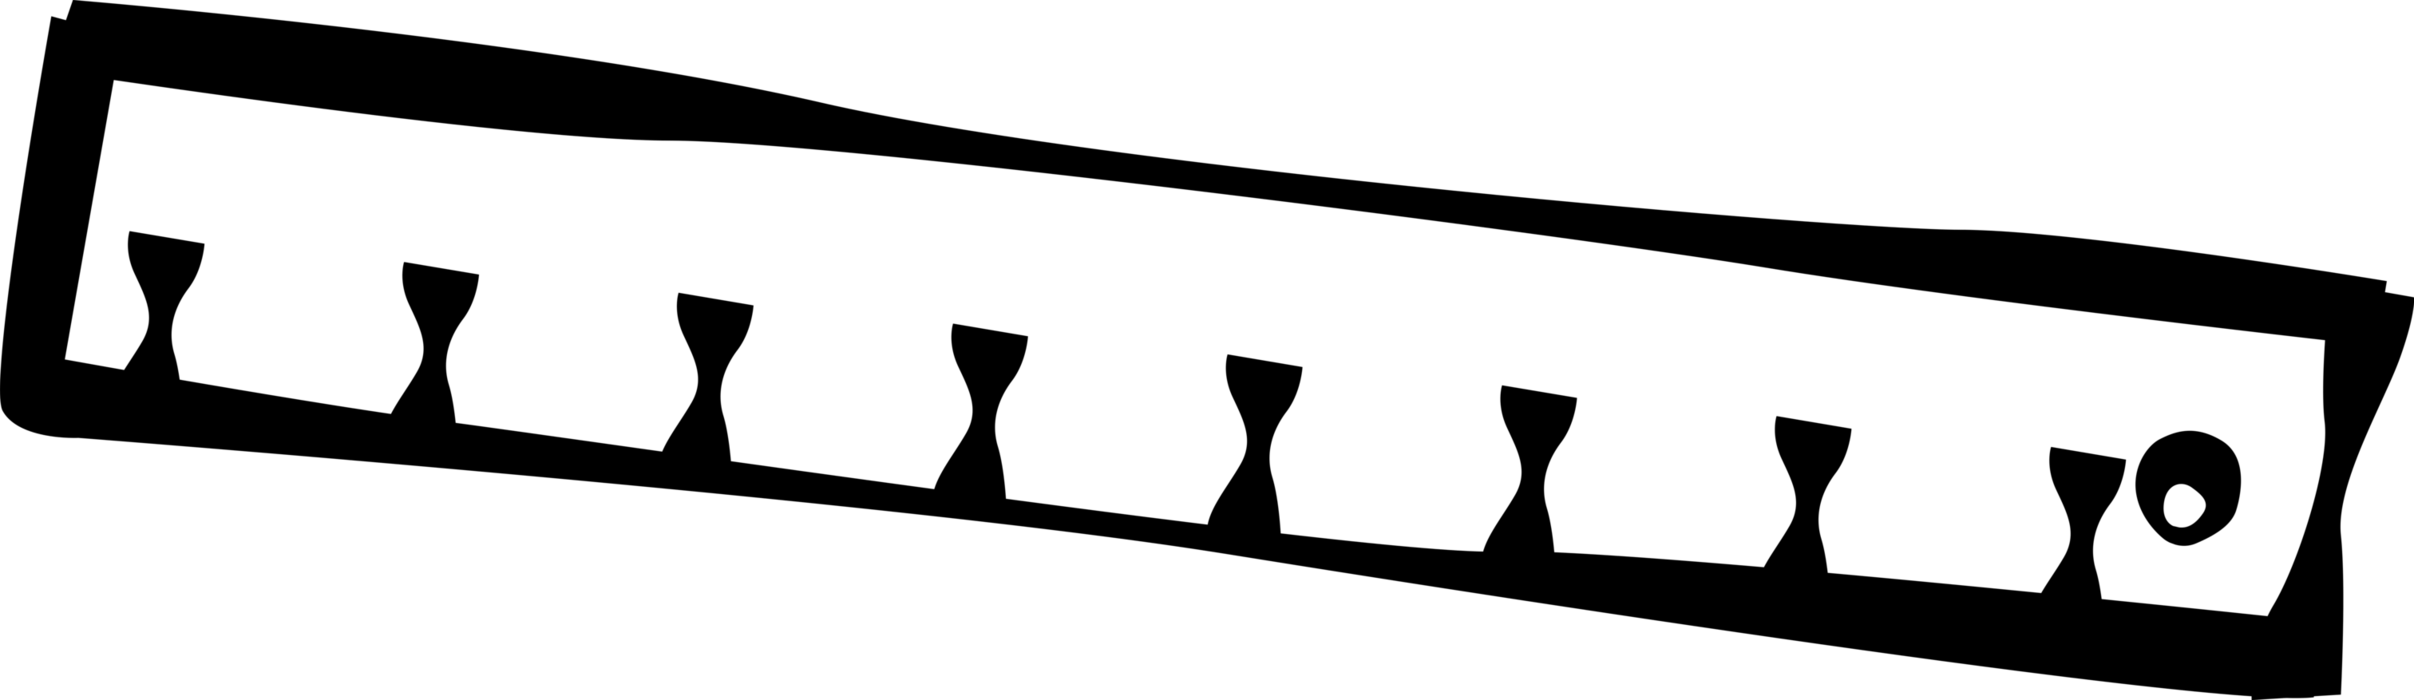 Vector Illustration Of Ruler Rule Or Line Gauge